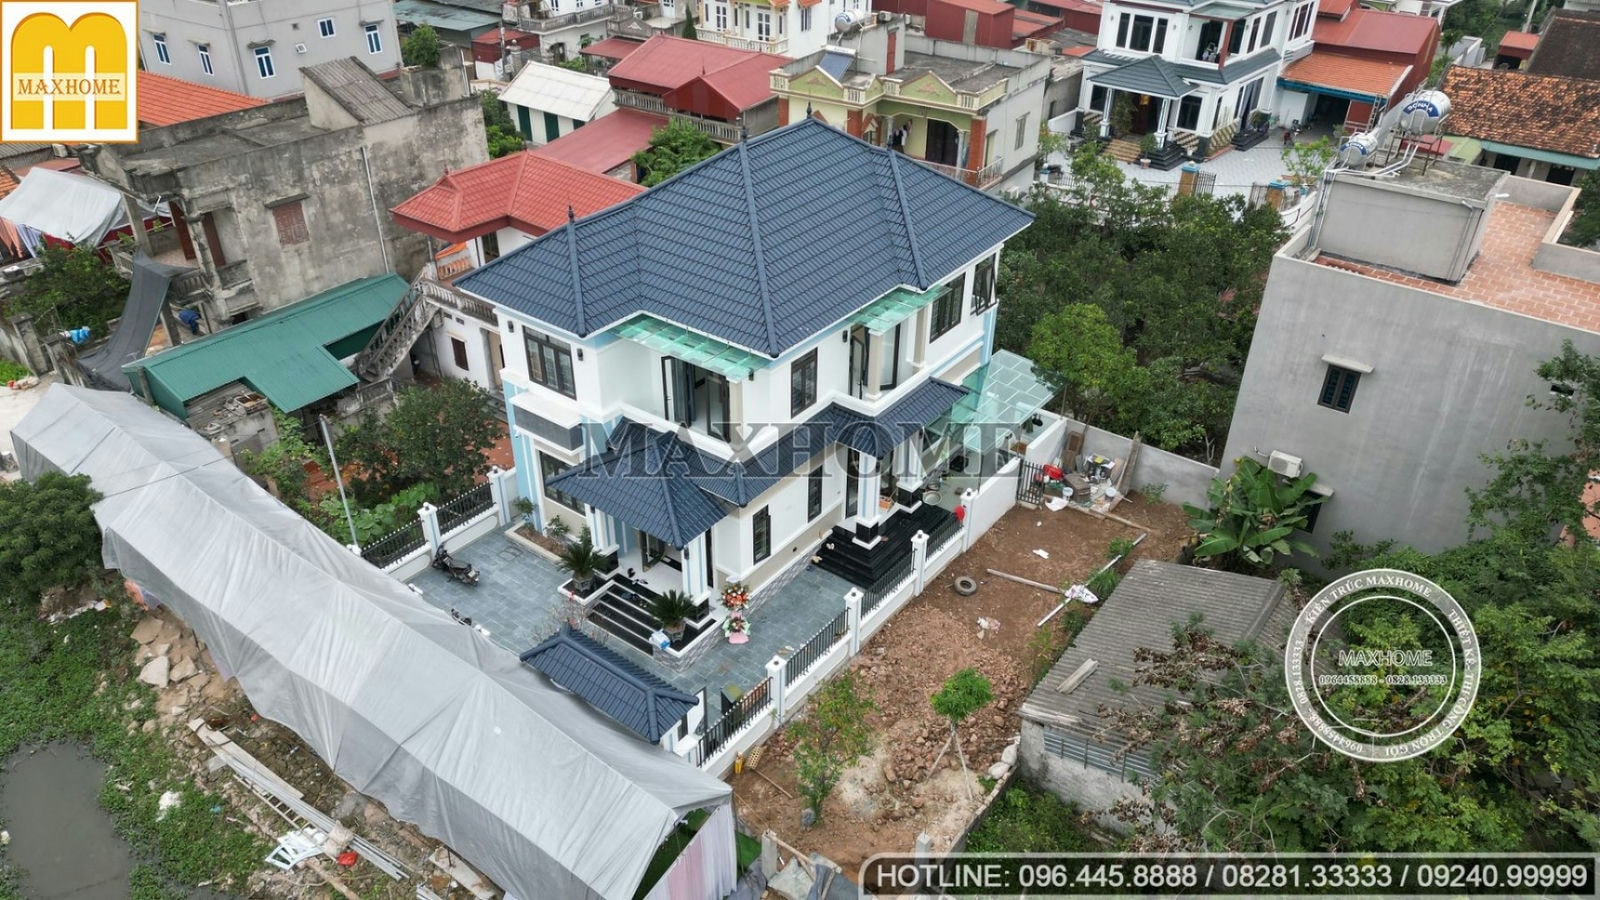 Maxhome thi công trọn gói mẫu biệt thự 2 tầng đẹp tại Hà Nội | MH00577